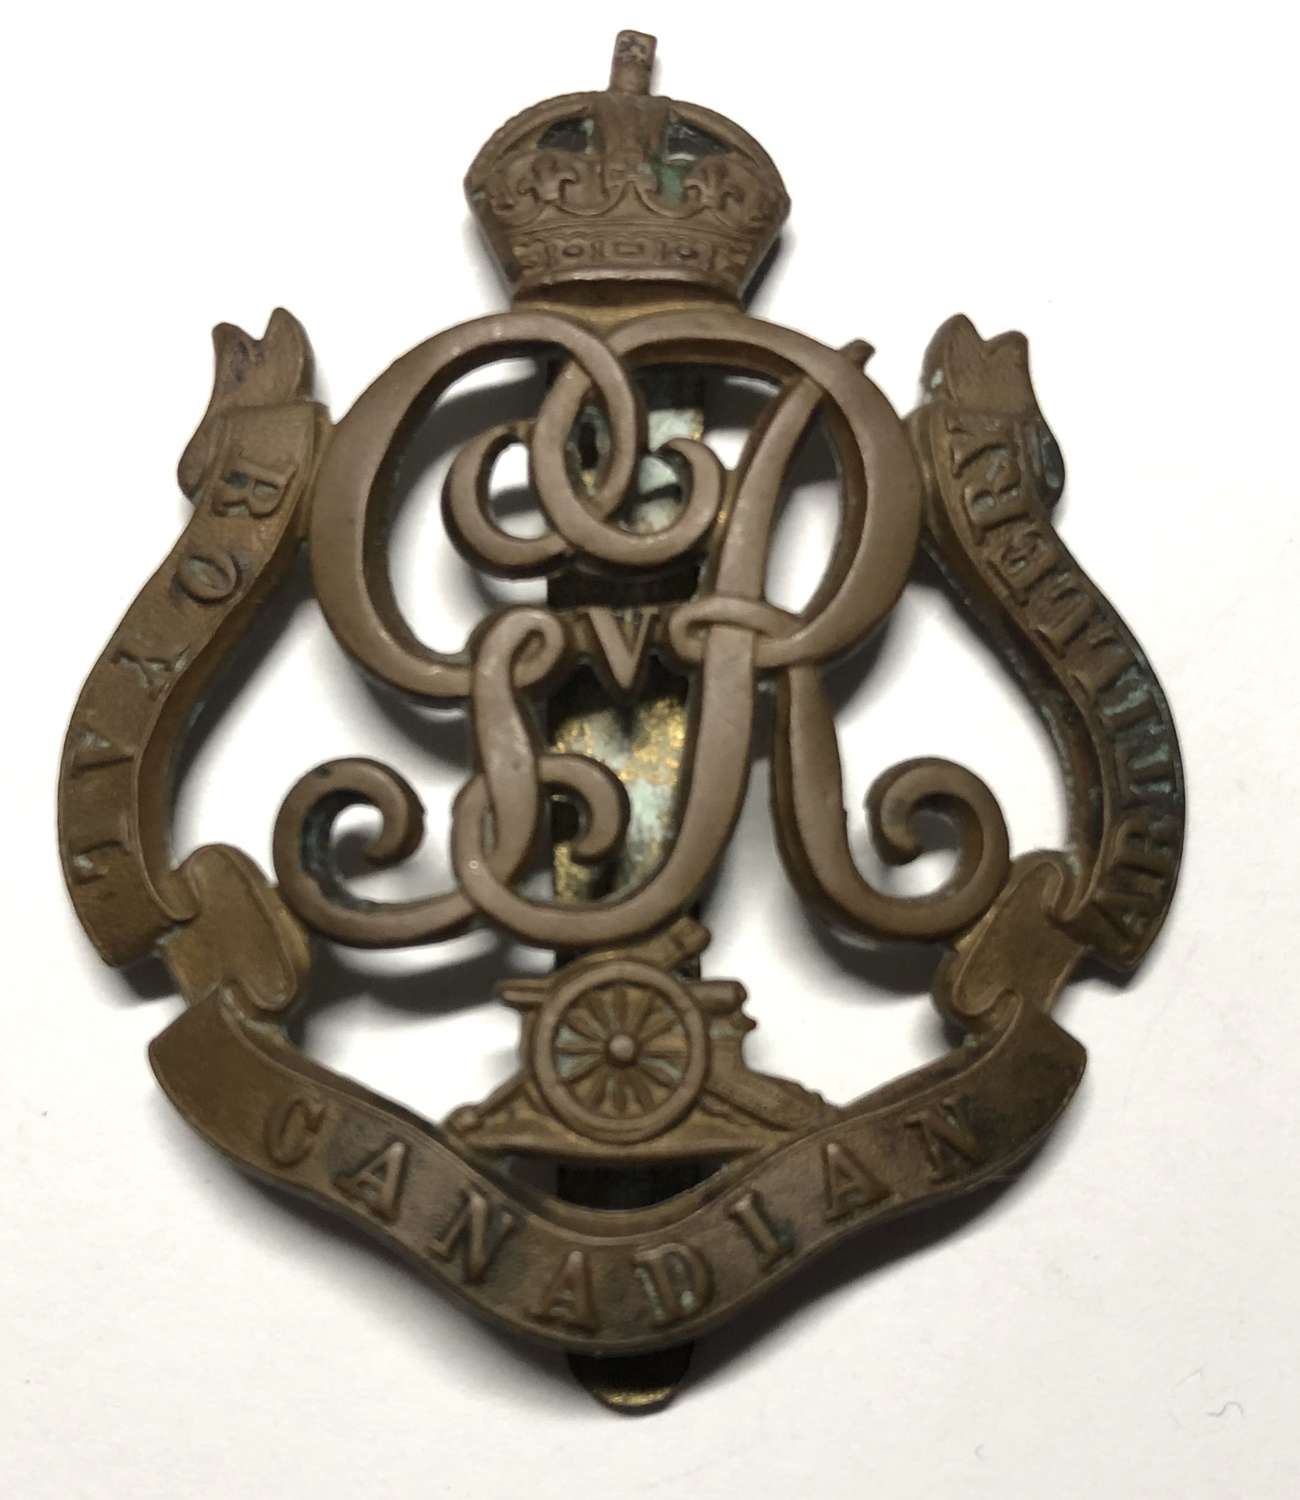 Royal Canadian Artillery cap badge circa 1910-20 by JR Gaunt & Son